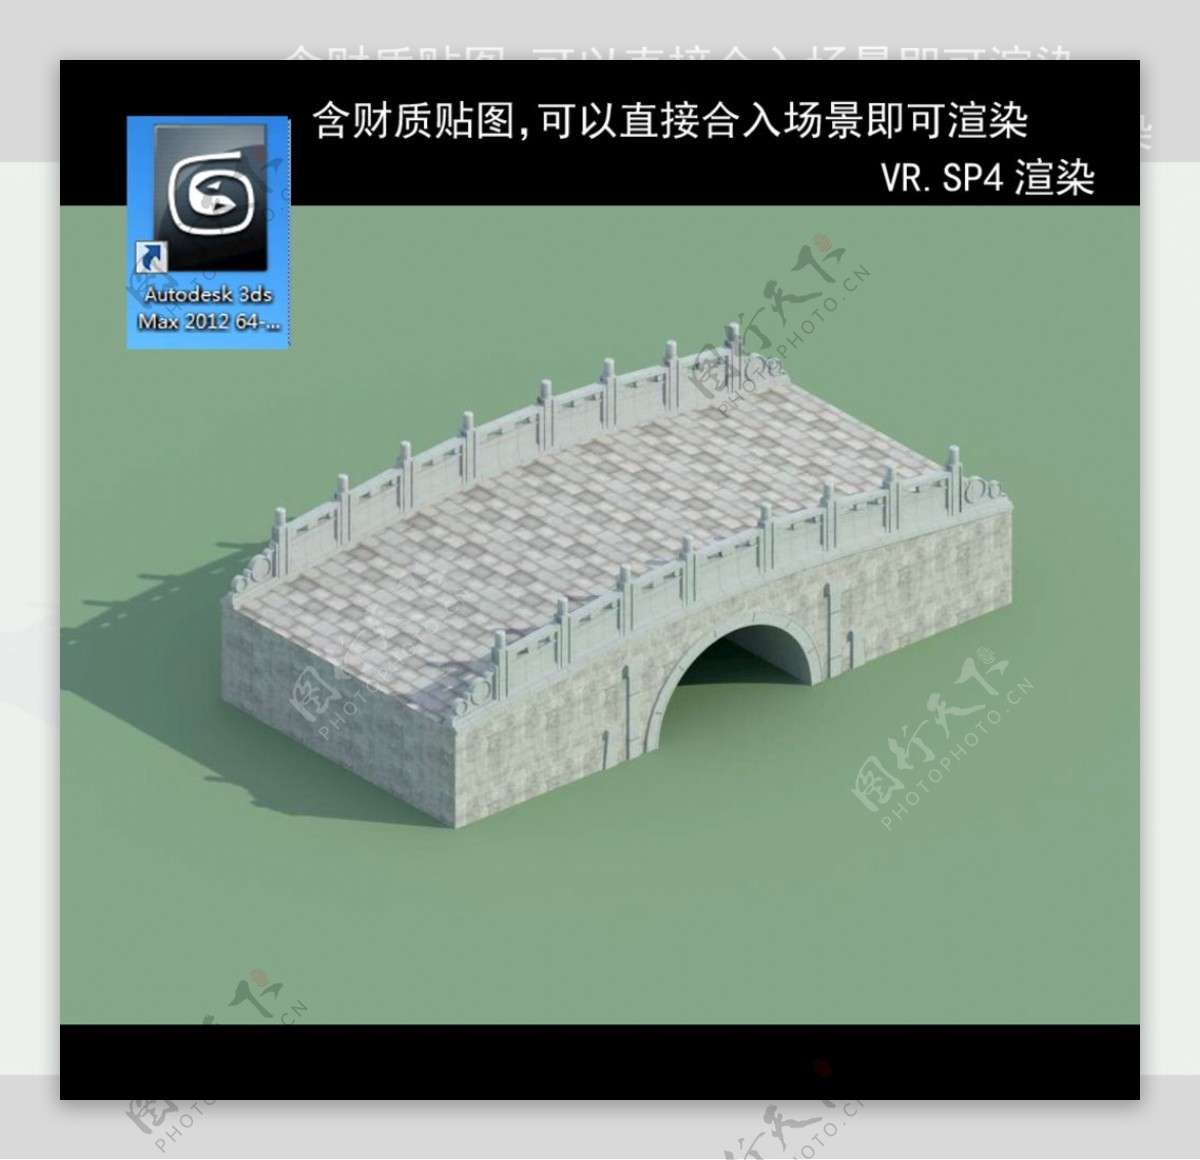 桥拱桥桥模型3D桥模型